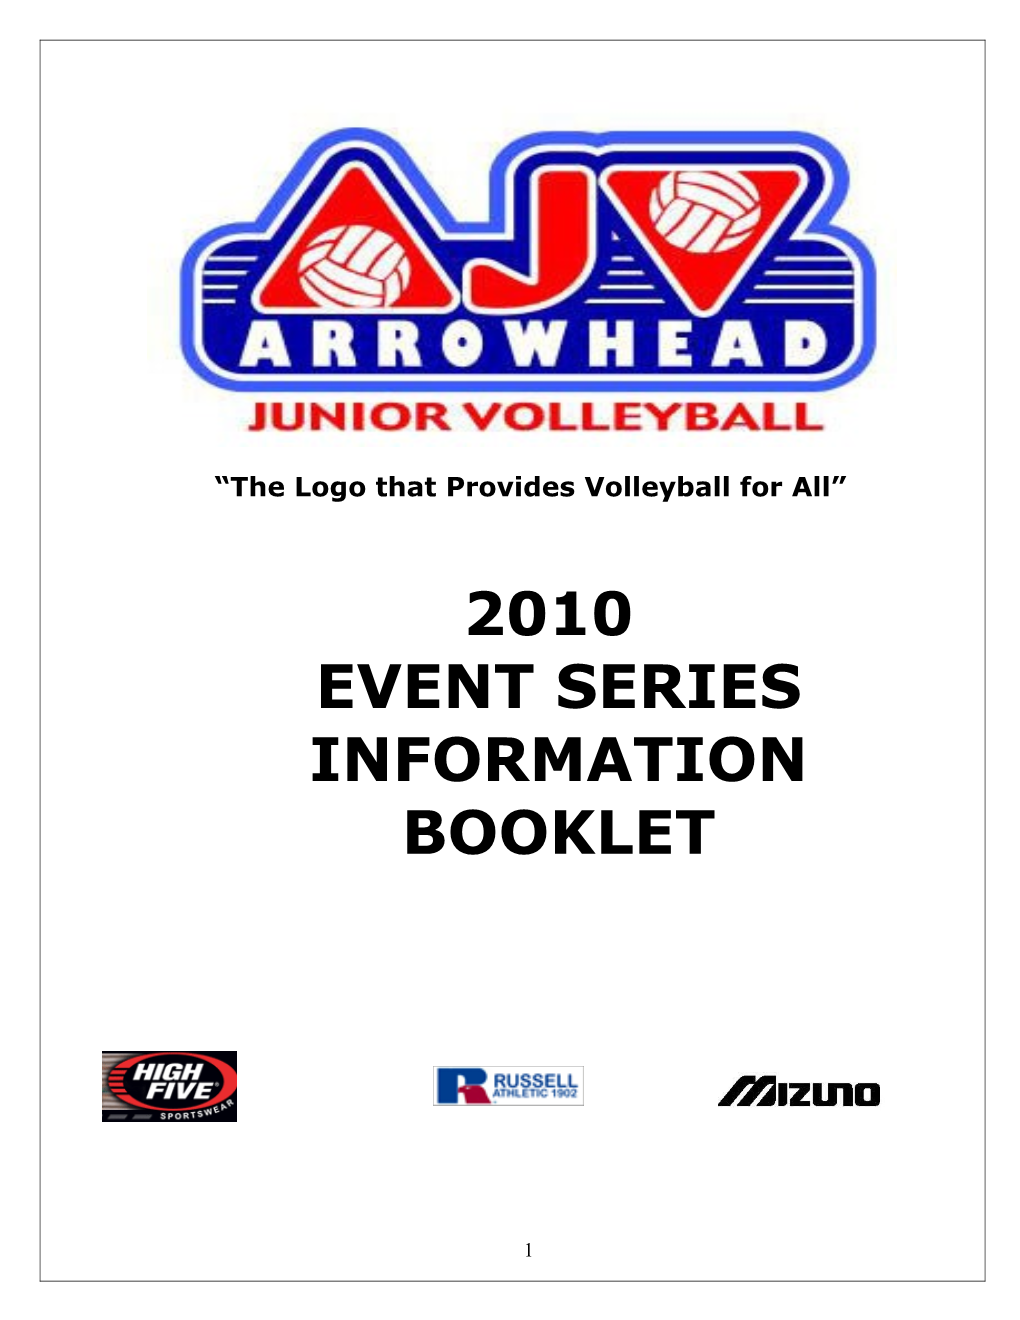 Arrowhead Volleyball League